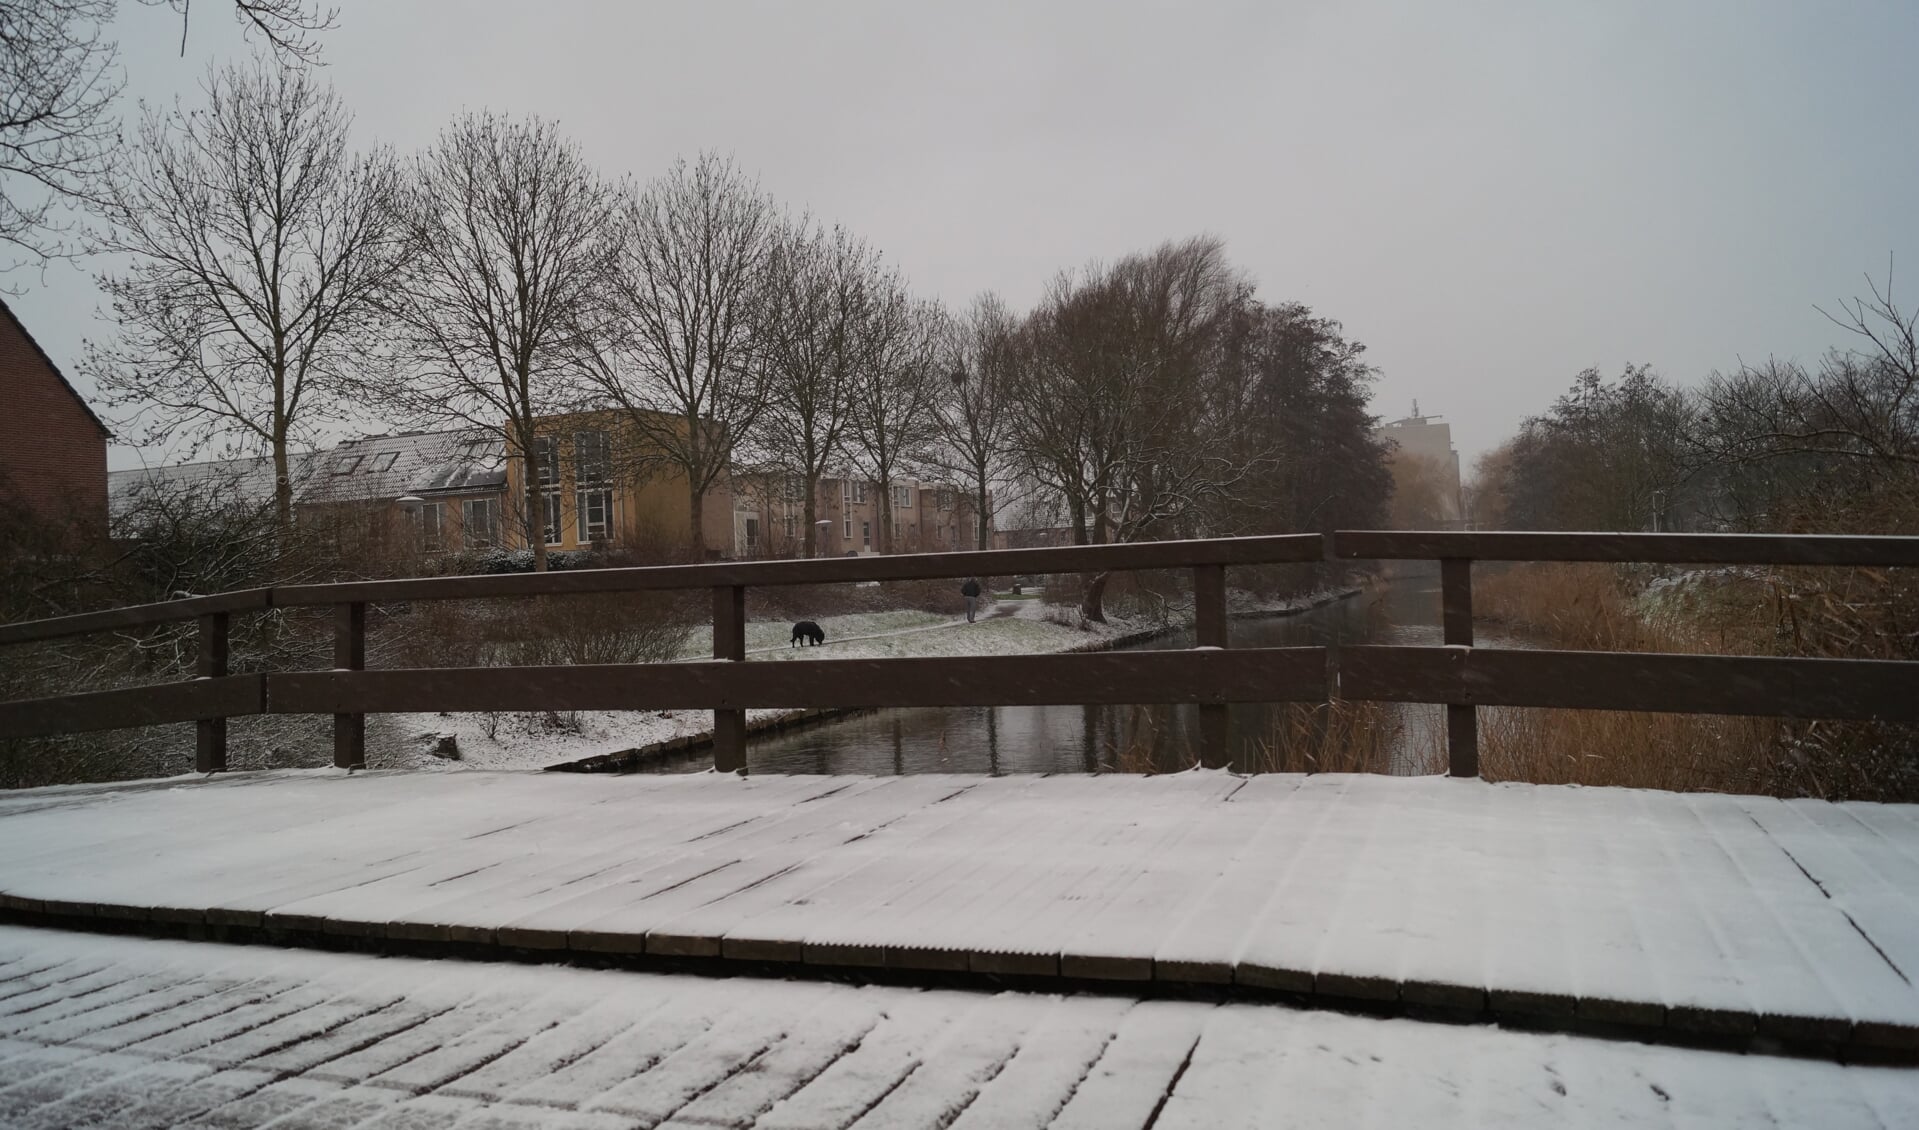 Winters plaatje in Westwijk waar de sneeuw de wereld een klein beetje wit kleurde.